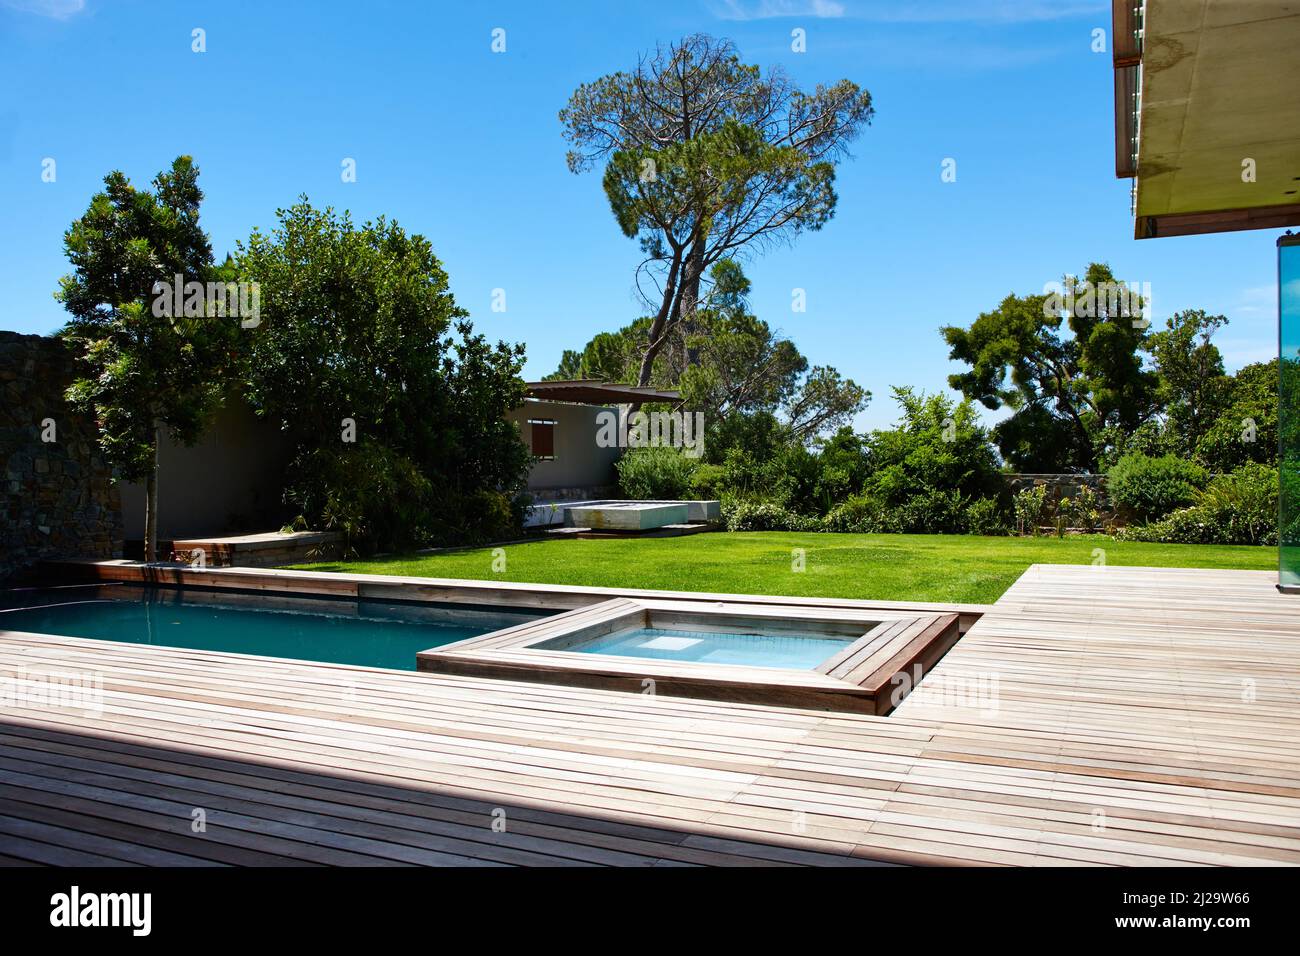 Vida moderna. Un moderno jardín trasero con piscina. Foto de stock